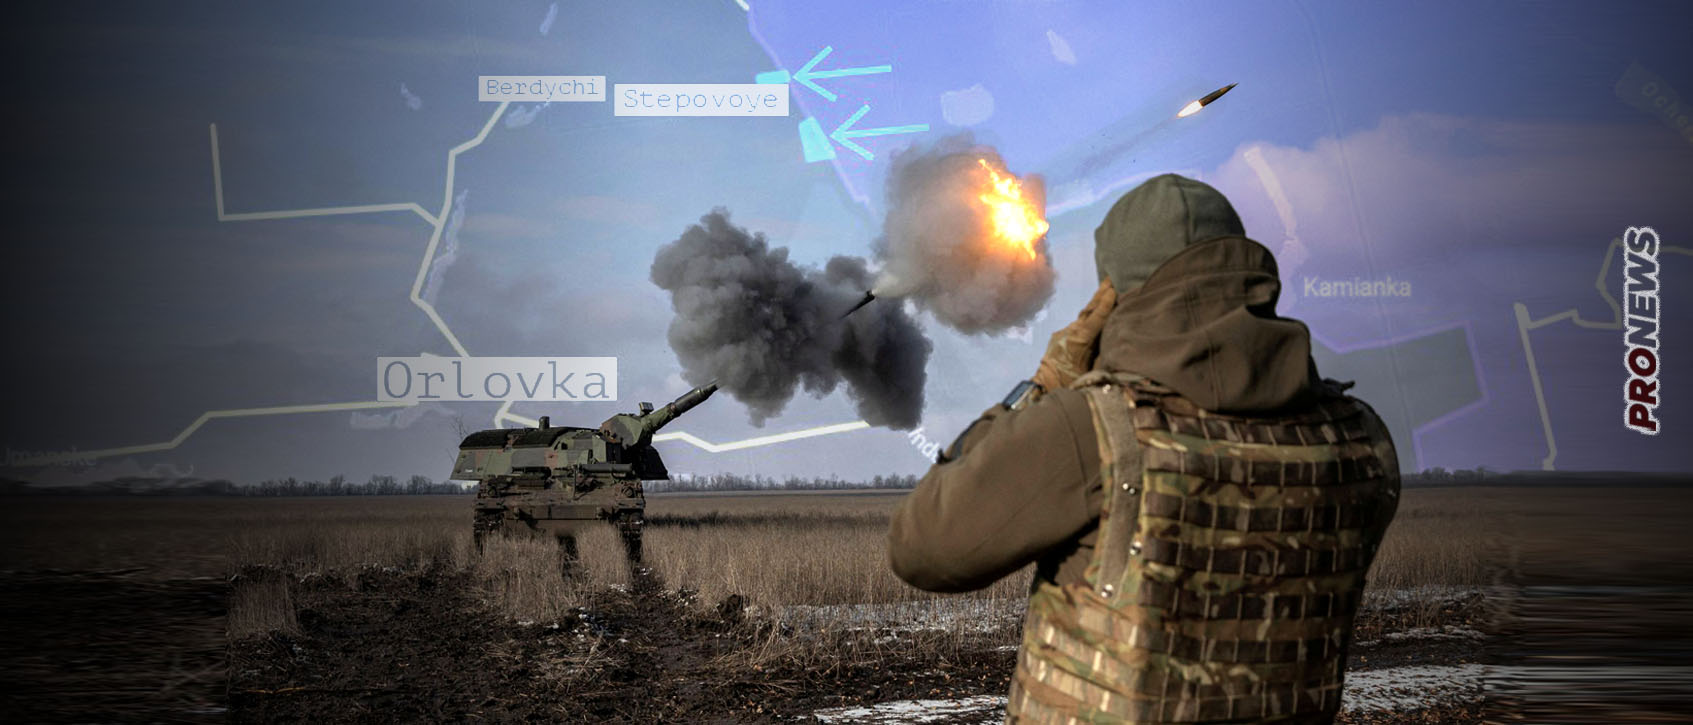 Αβντίιβκα: Βίντεο από ρωσική επίθεση με τεθωρακισμένα και η απάντηση των Ουκρανών